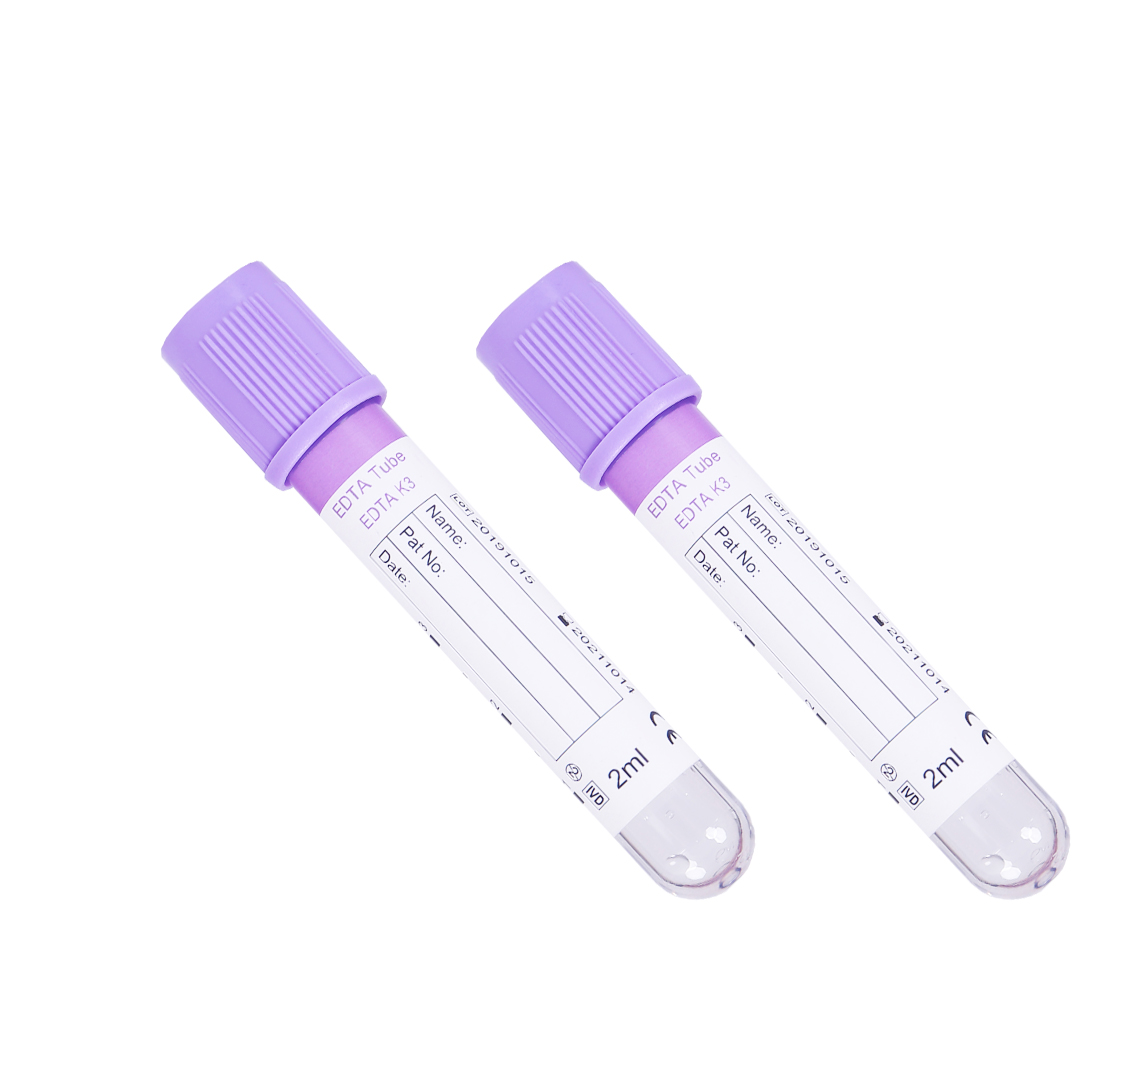 Dlta-k2 /K3 tube (sterile)